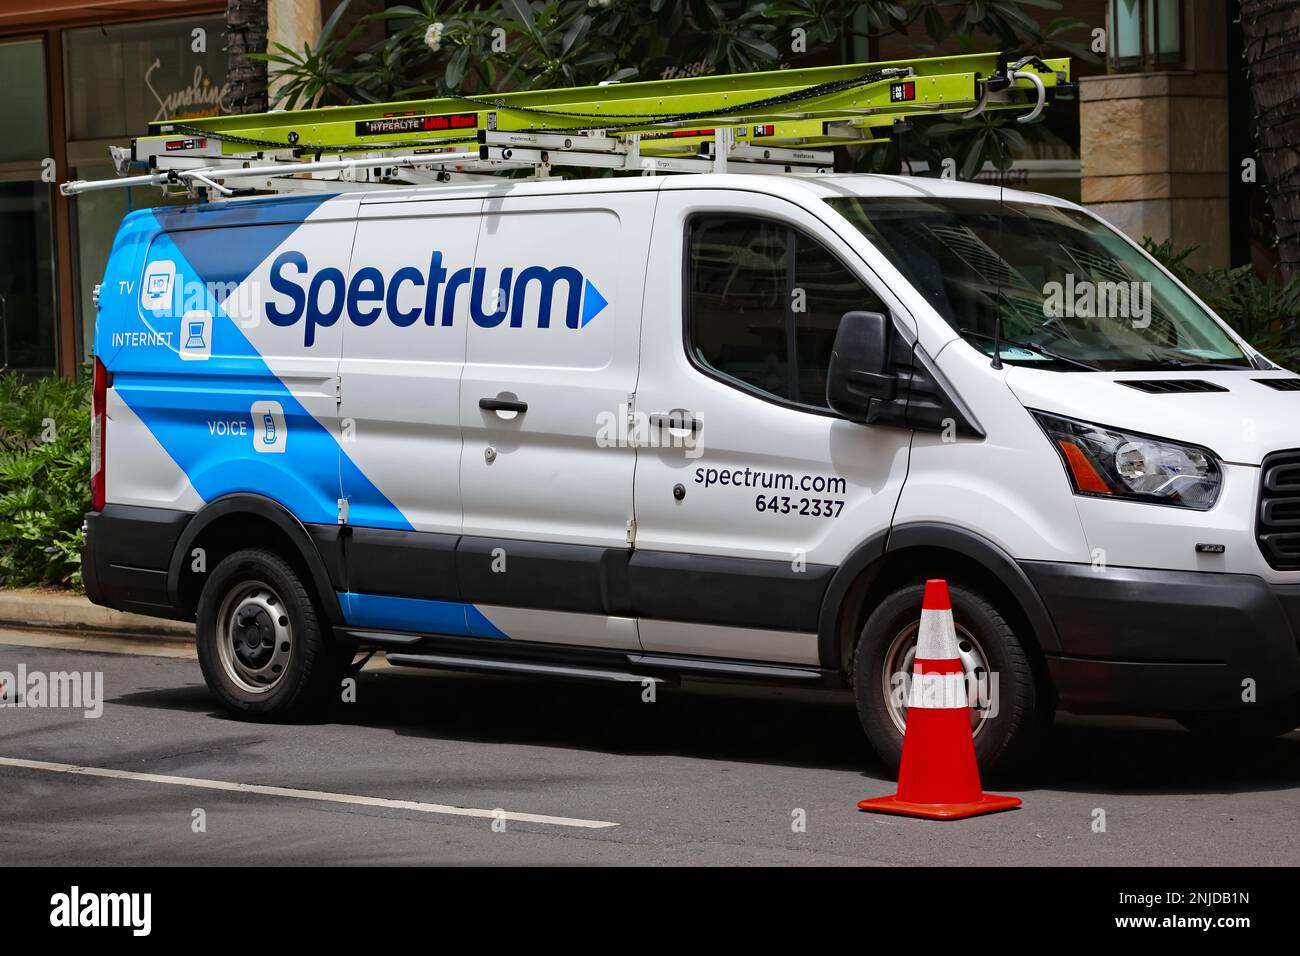 Honolulu, HI - 20. Juni 2020: Logo des Spectrum Cable Provider auf einem Servicefahrzeug, das in einer sonnigen Straße geparkt ist. Stockfoto